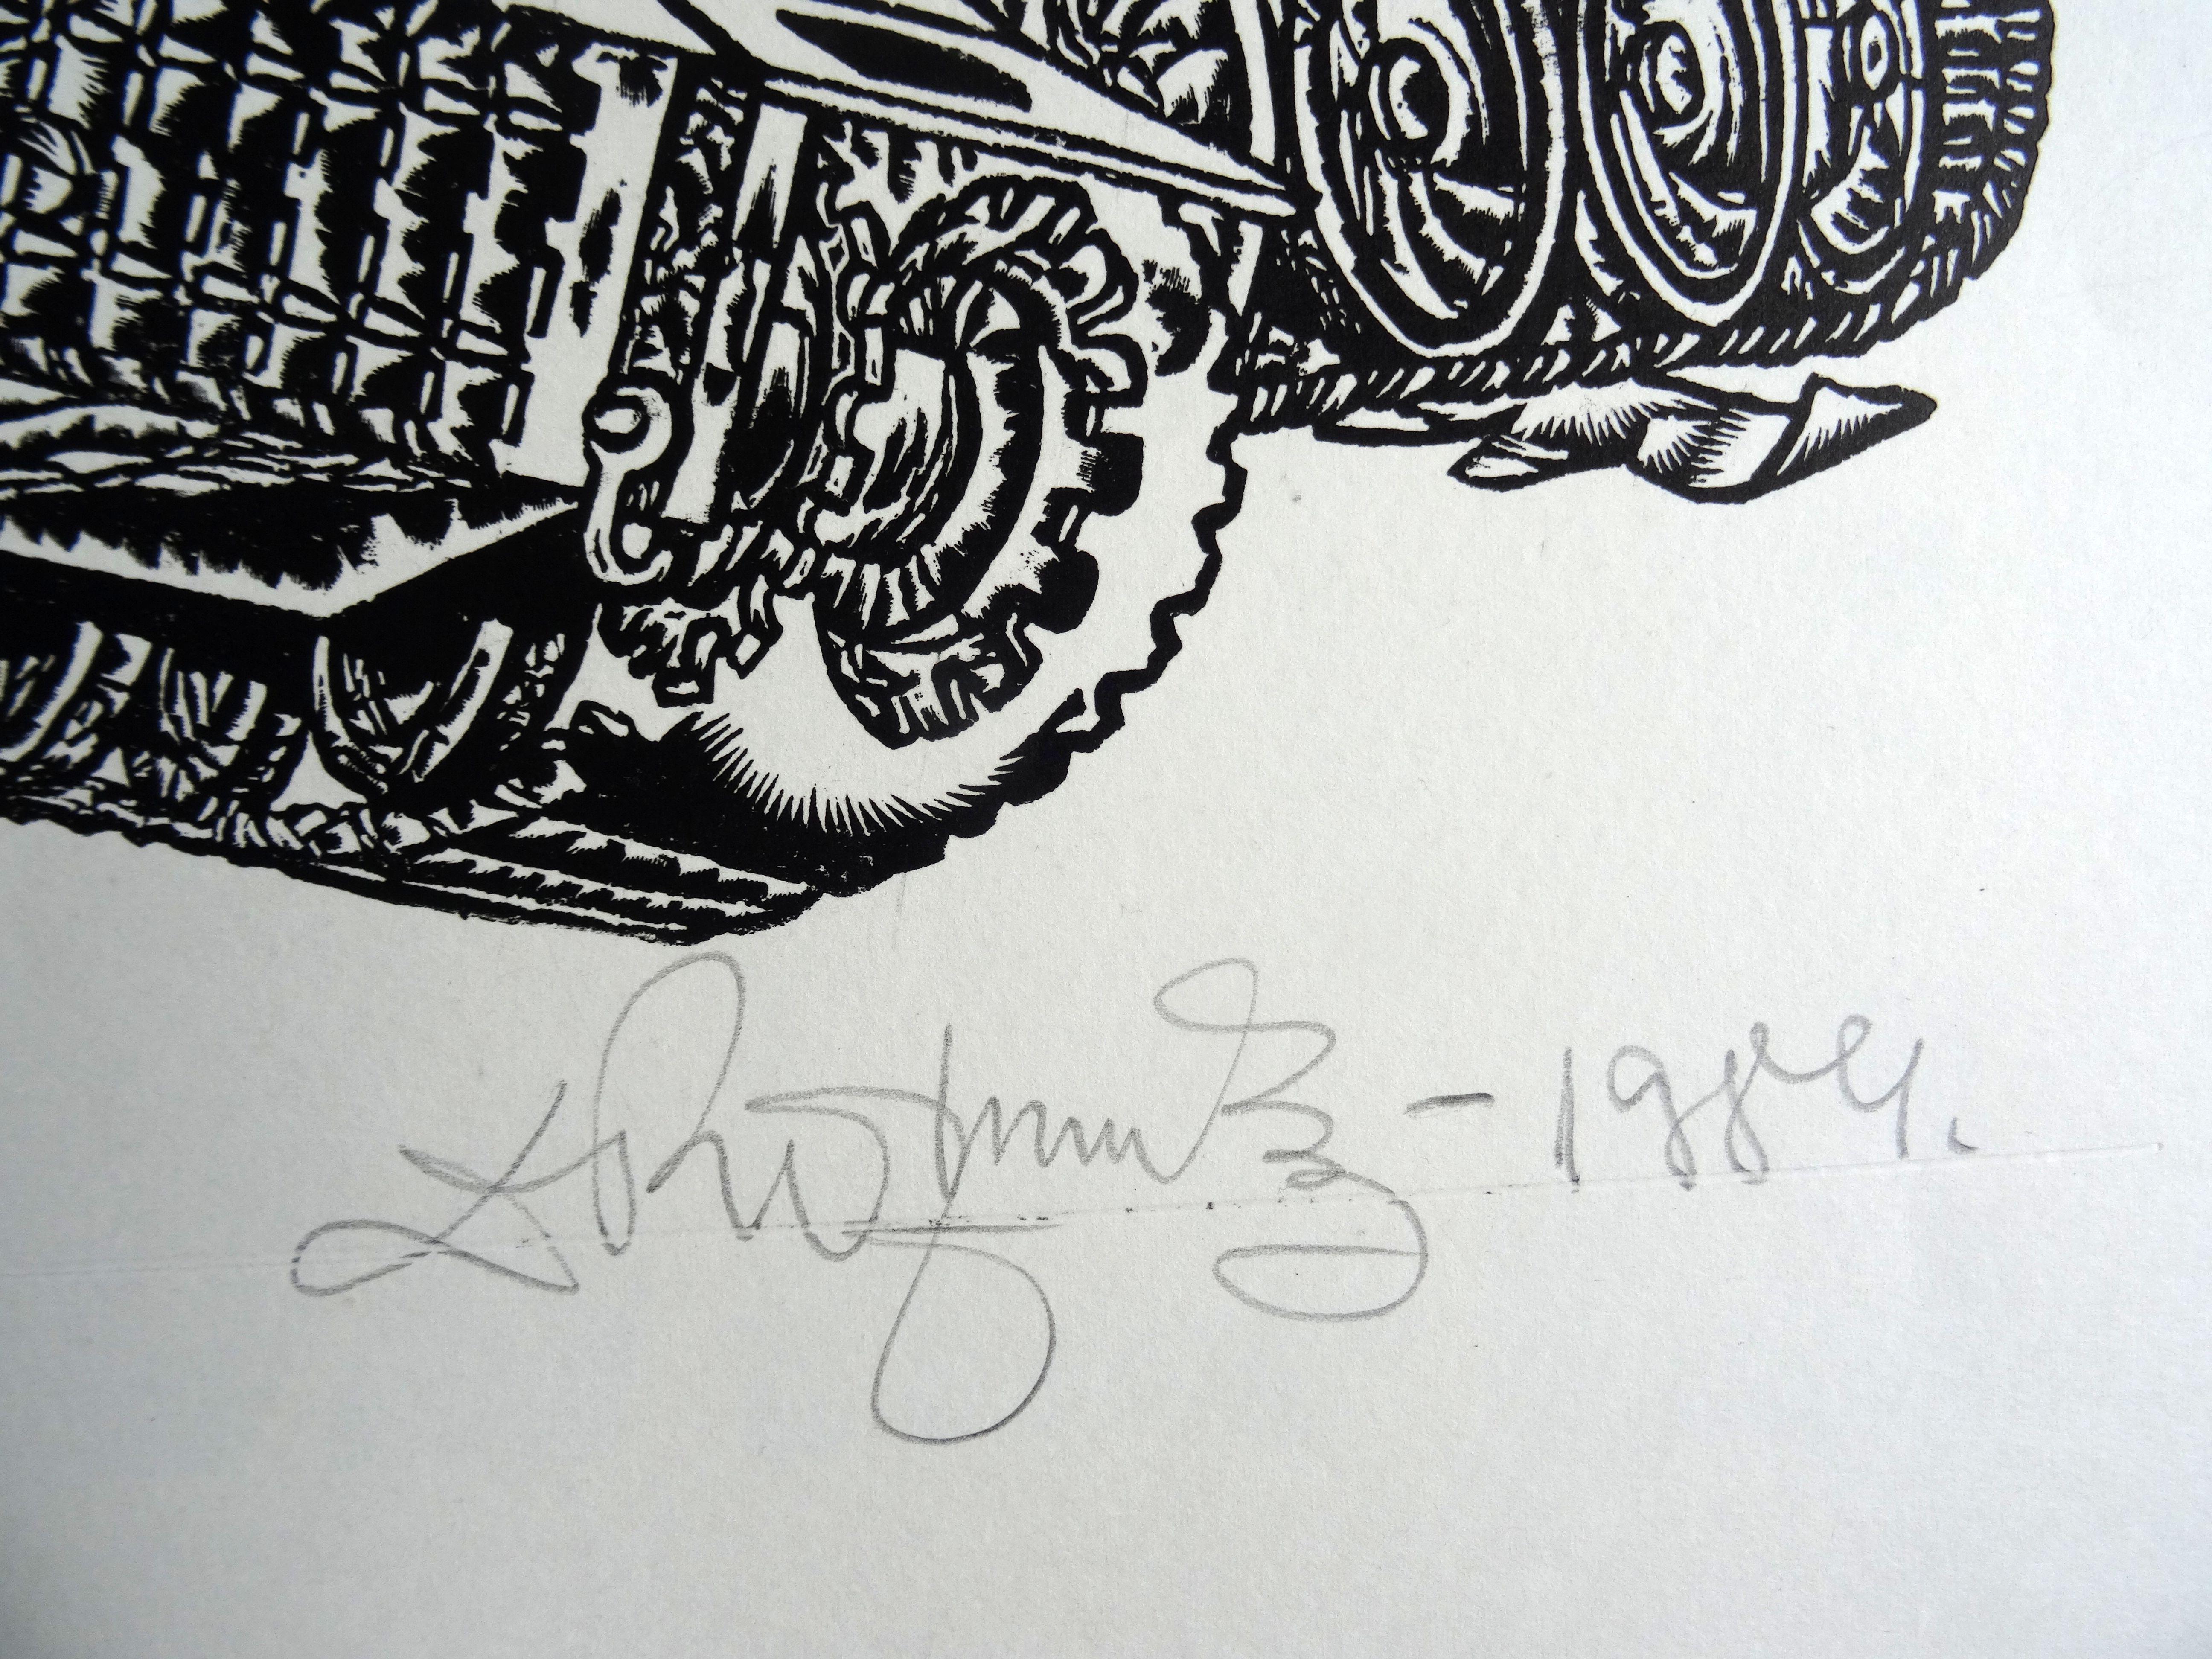 Fracture. 1984, Linolschnitt, Druckgröße 47x58 cm; insgesamt 60x68 cm (Geometrische Abstraktion), Print, von Dainis Rozkalns